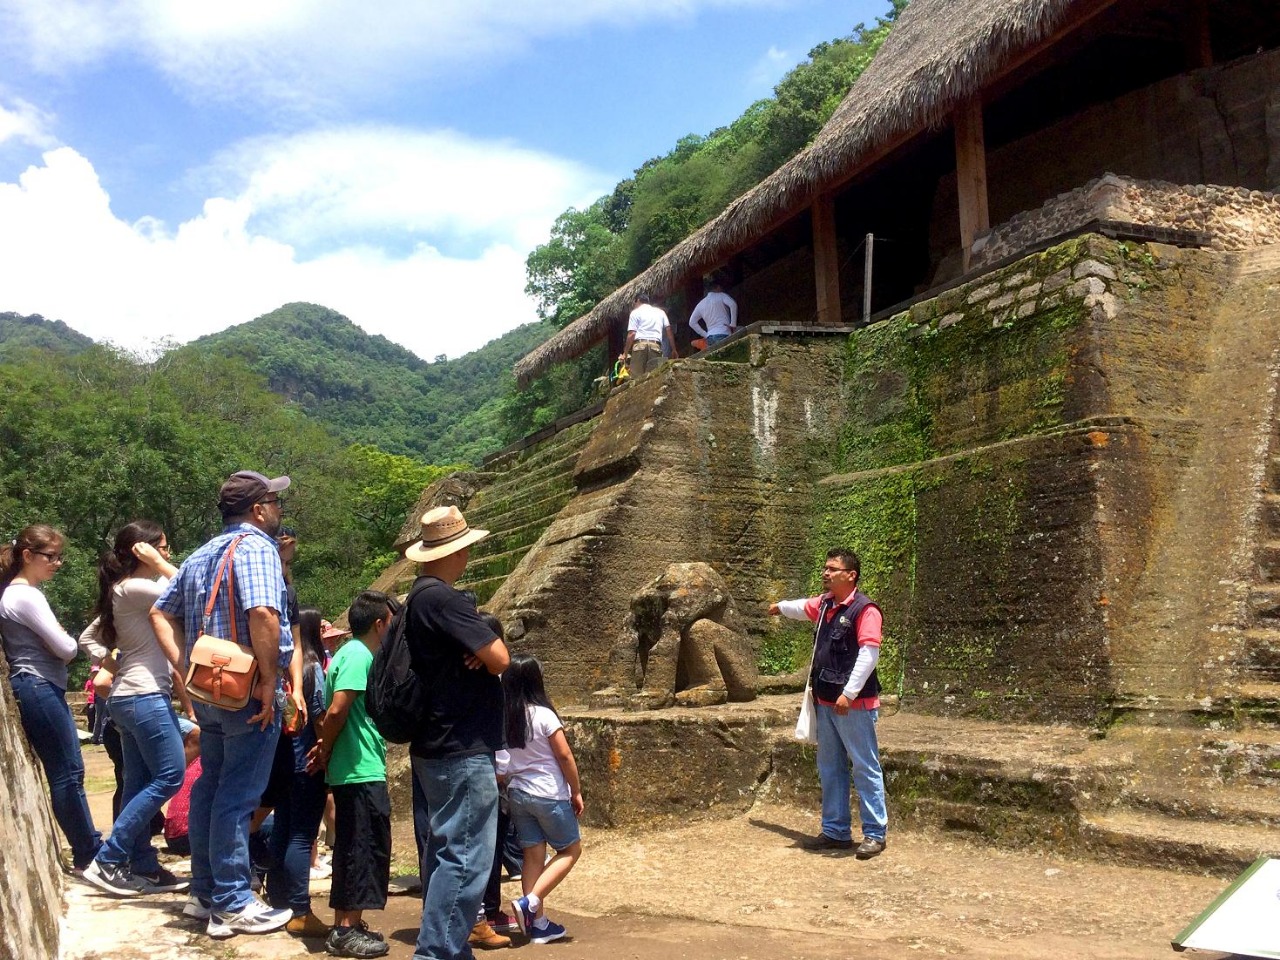 Encabeza Edoméx oferta de turismo arqueológico de México